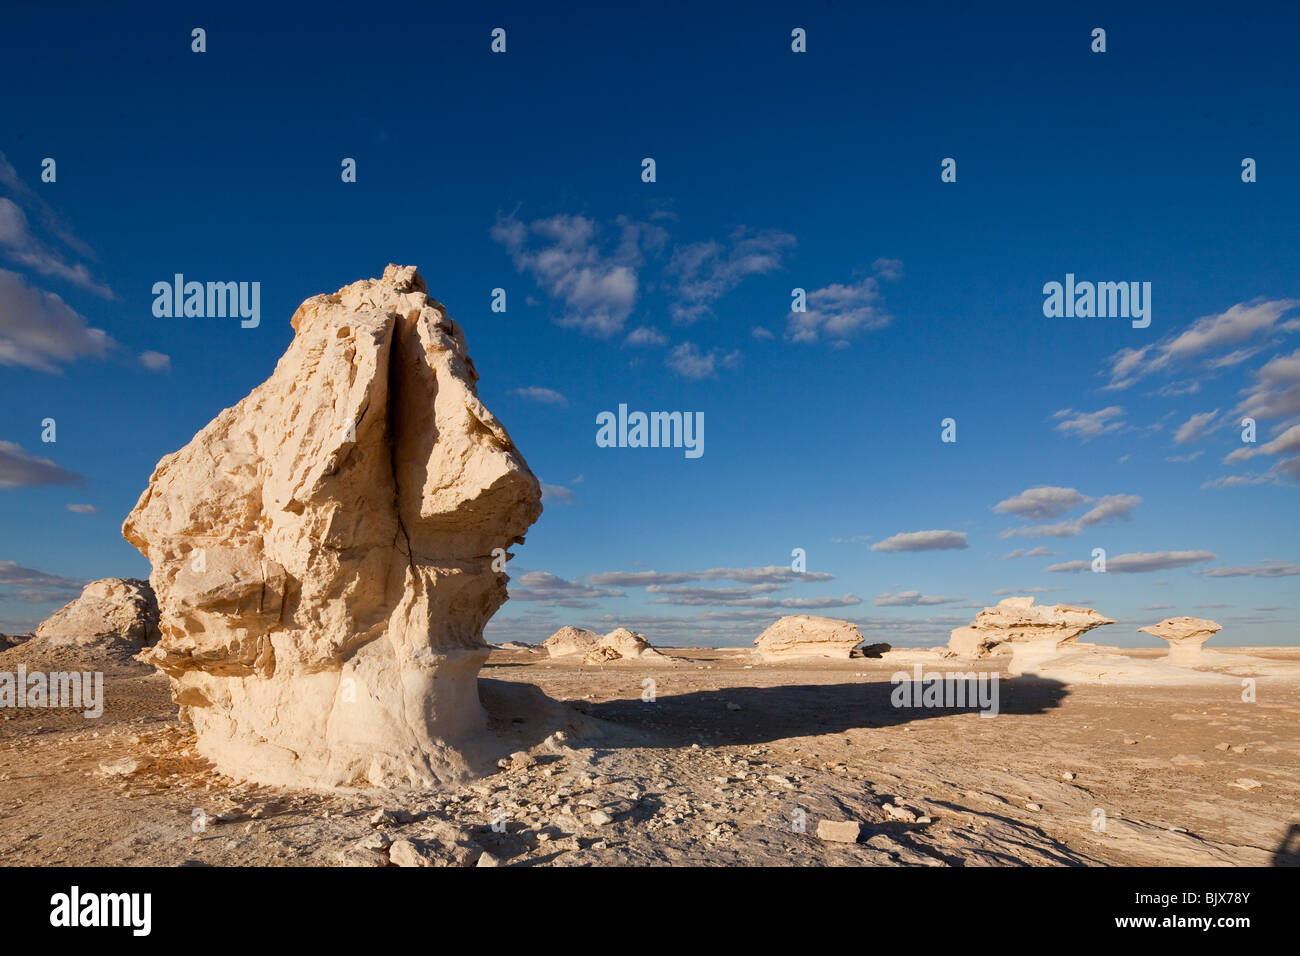 Roches calcaires dans le désert blanc, Farafra oasis, Egypte Banque D'Images